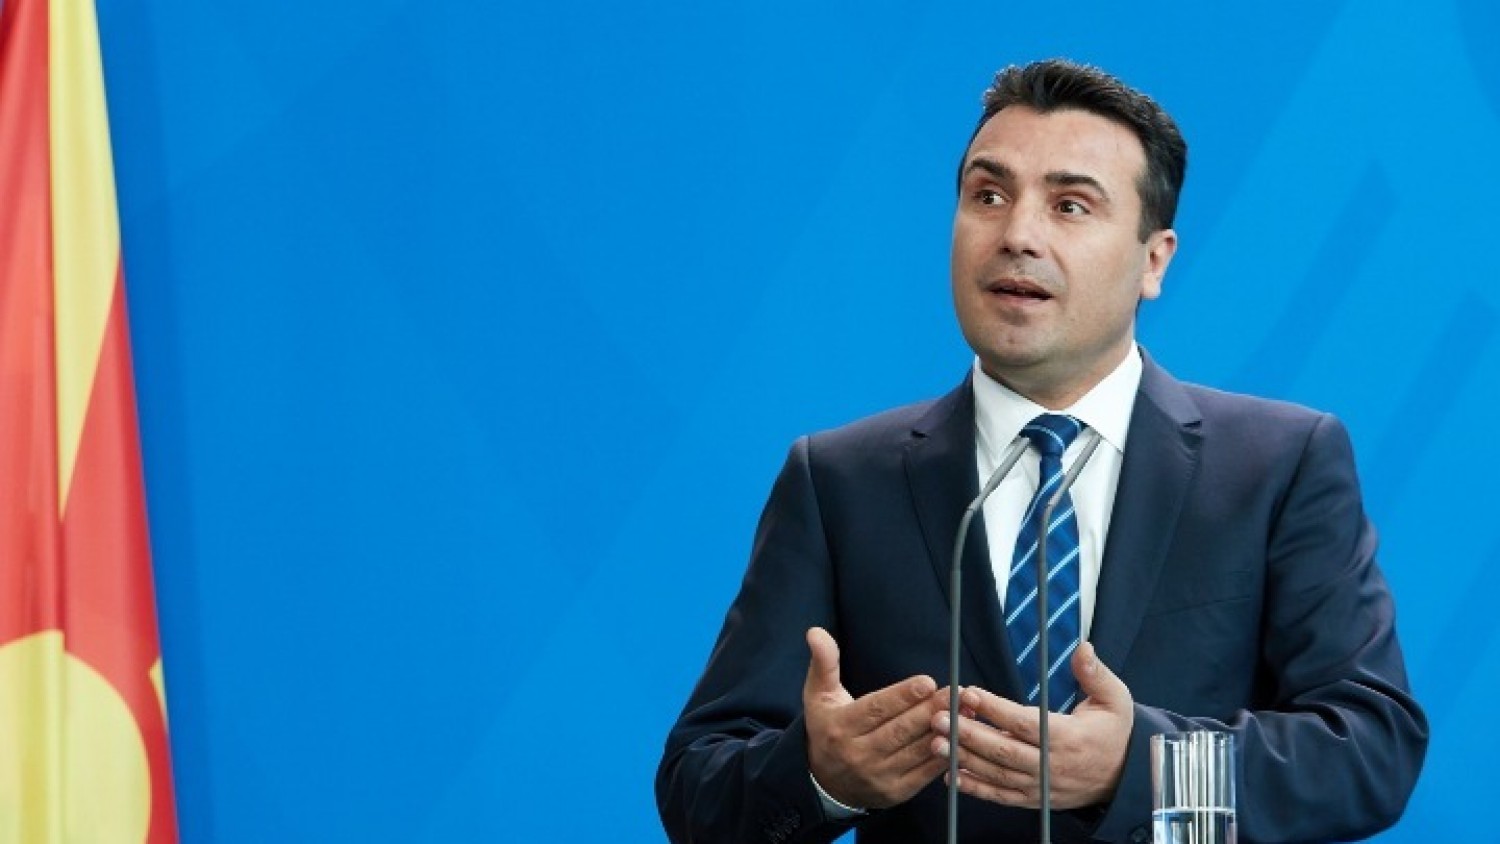 Ζ.Ζάεφ: «Οι Έλληνες από εχθροί έγιναν φίλοι μας» μόλις δέχτηκαν να εκχωρήσουν την Μακεδονία